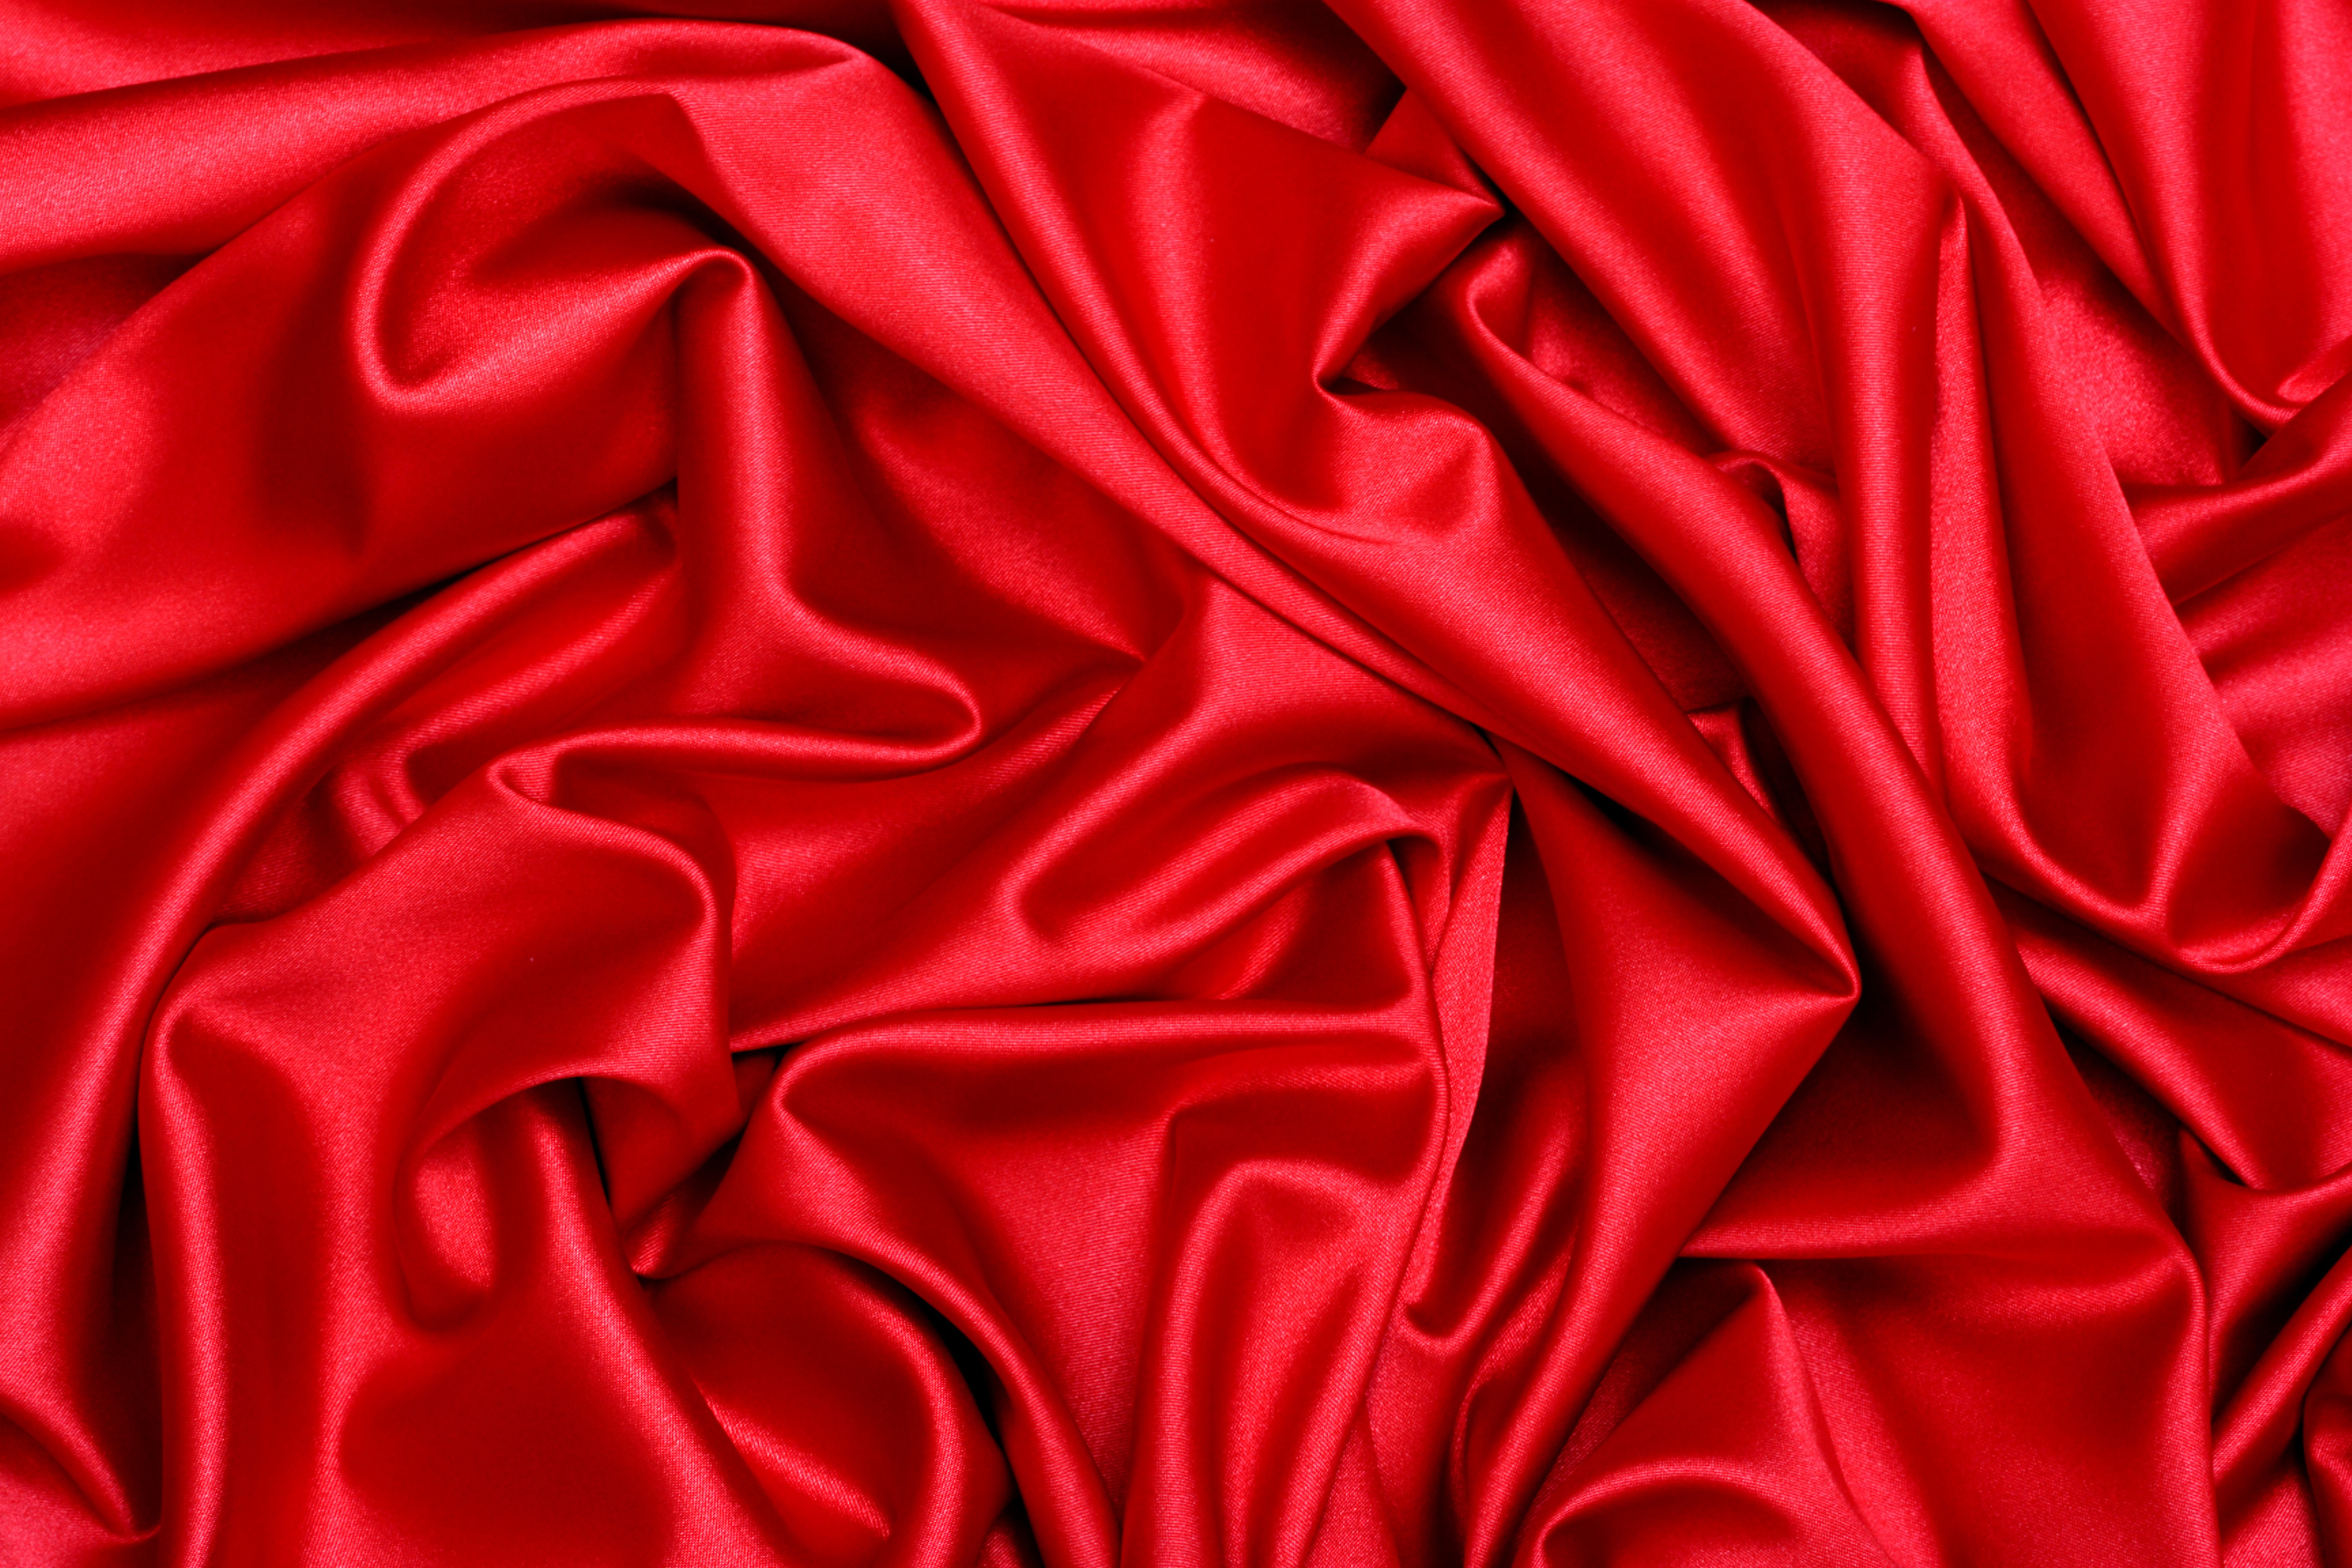 Скачать текстуру в высоком разрешении: красная ткань, шелк, скачать фото,  фон, текстура, red satin texture background